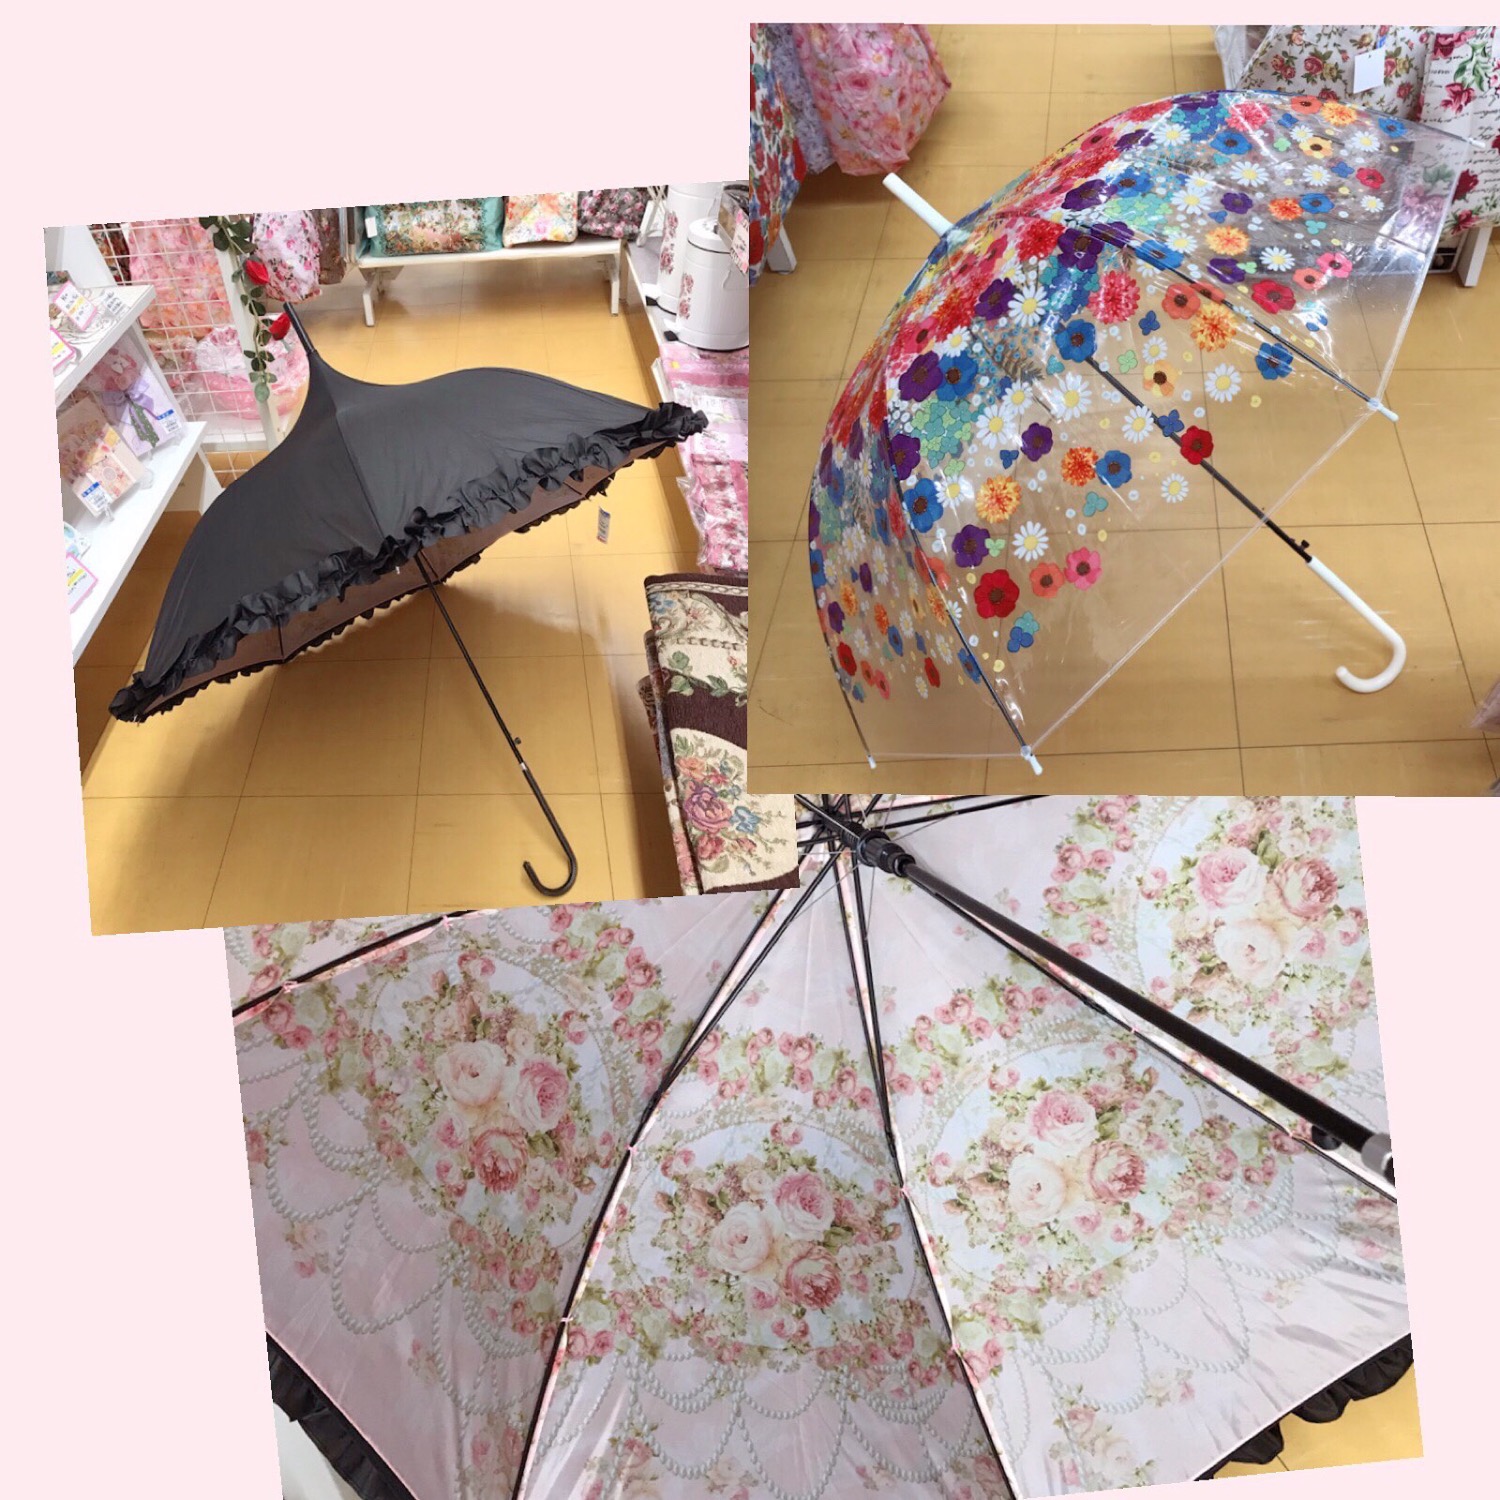 可愛い傘で雨の日も楽しくなる♪?☂️??✨